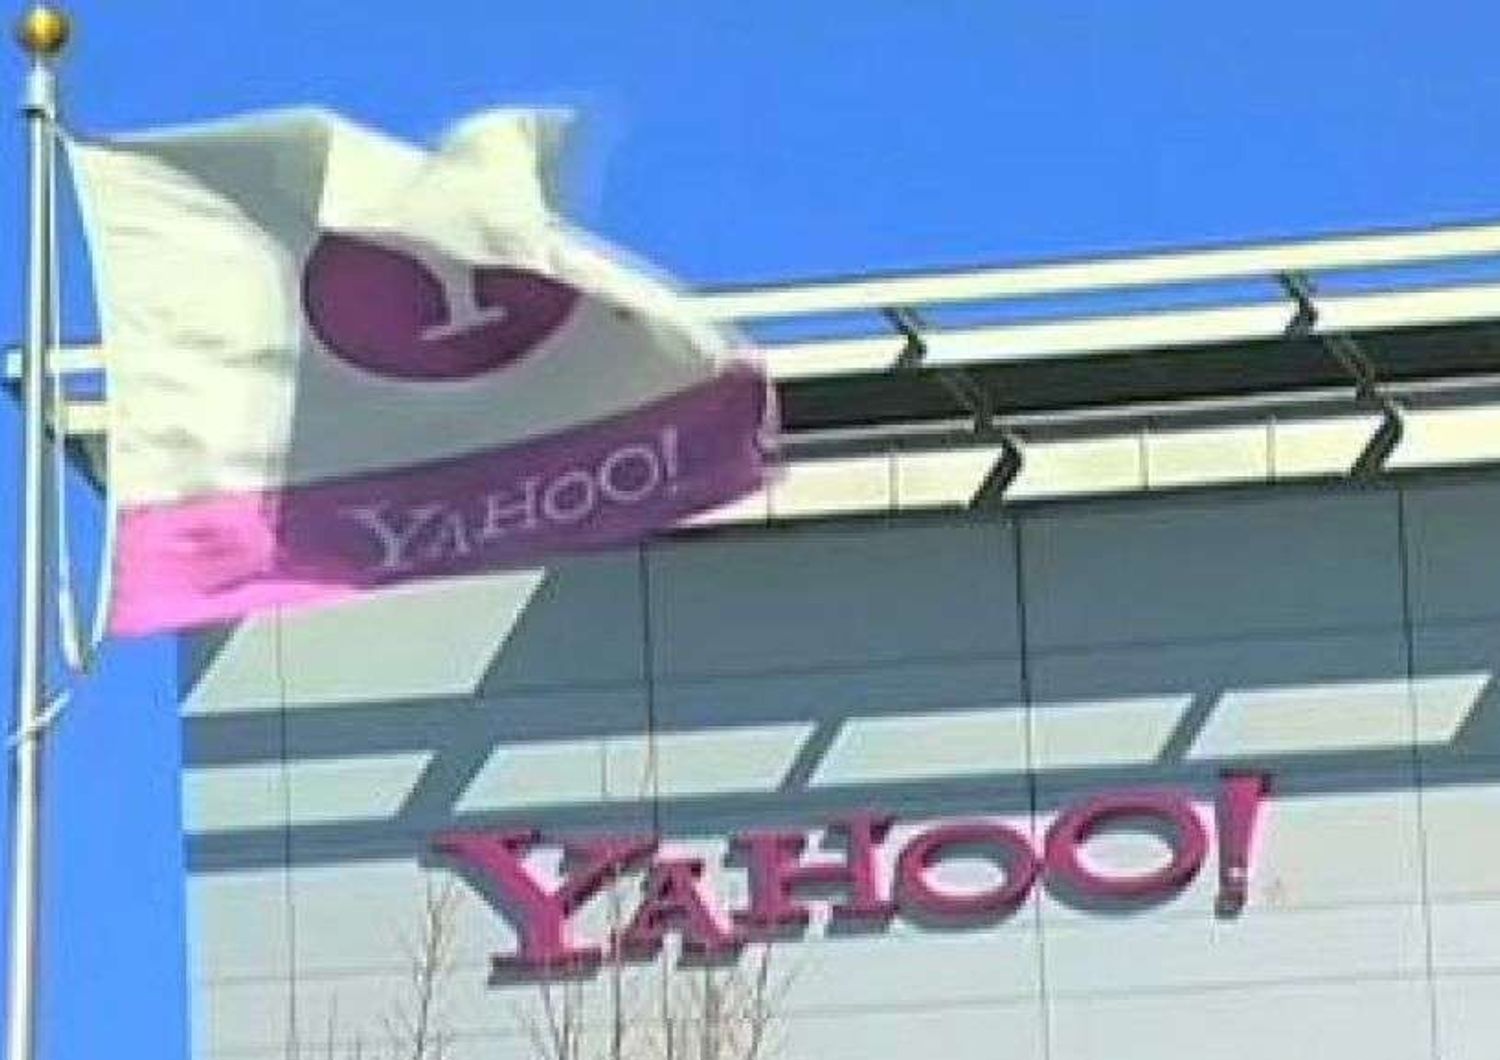 Mozilla abbandona Google e sceglie Yahoo come motore di ricerca